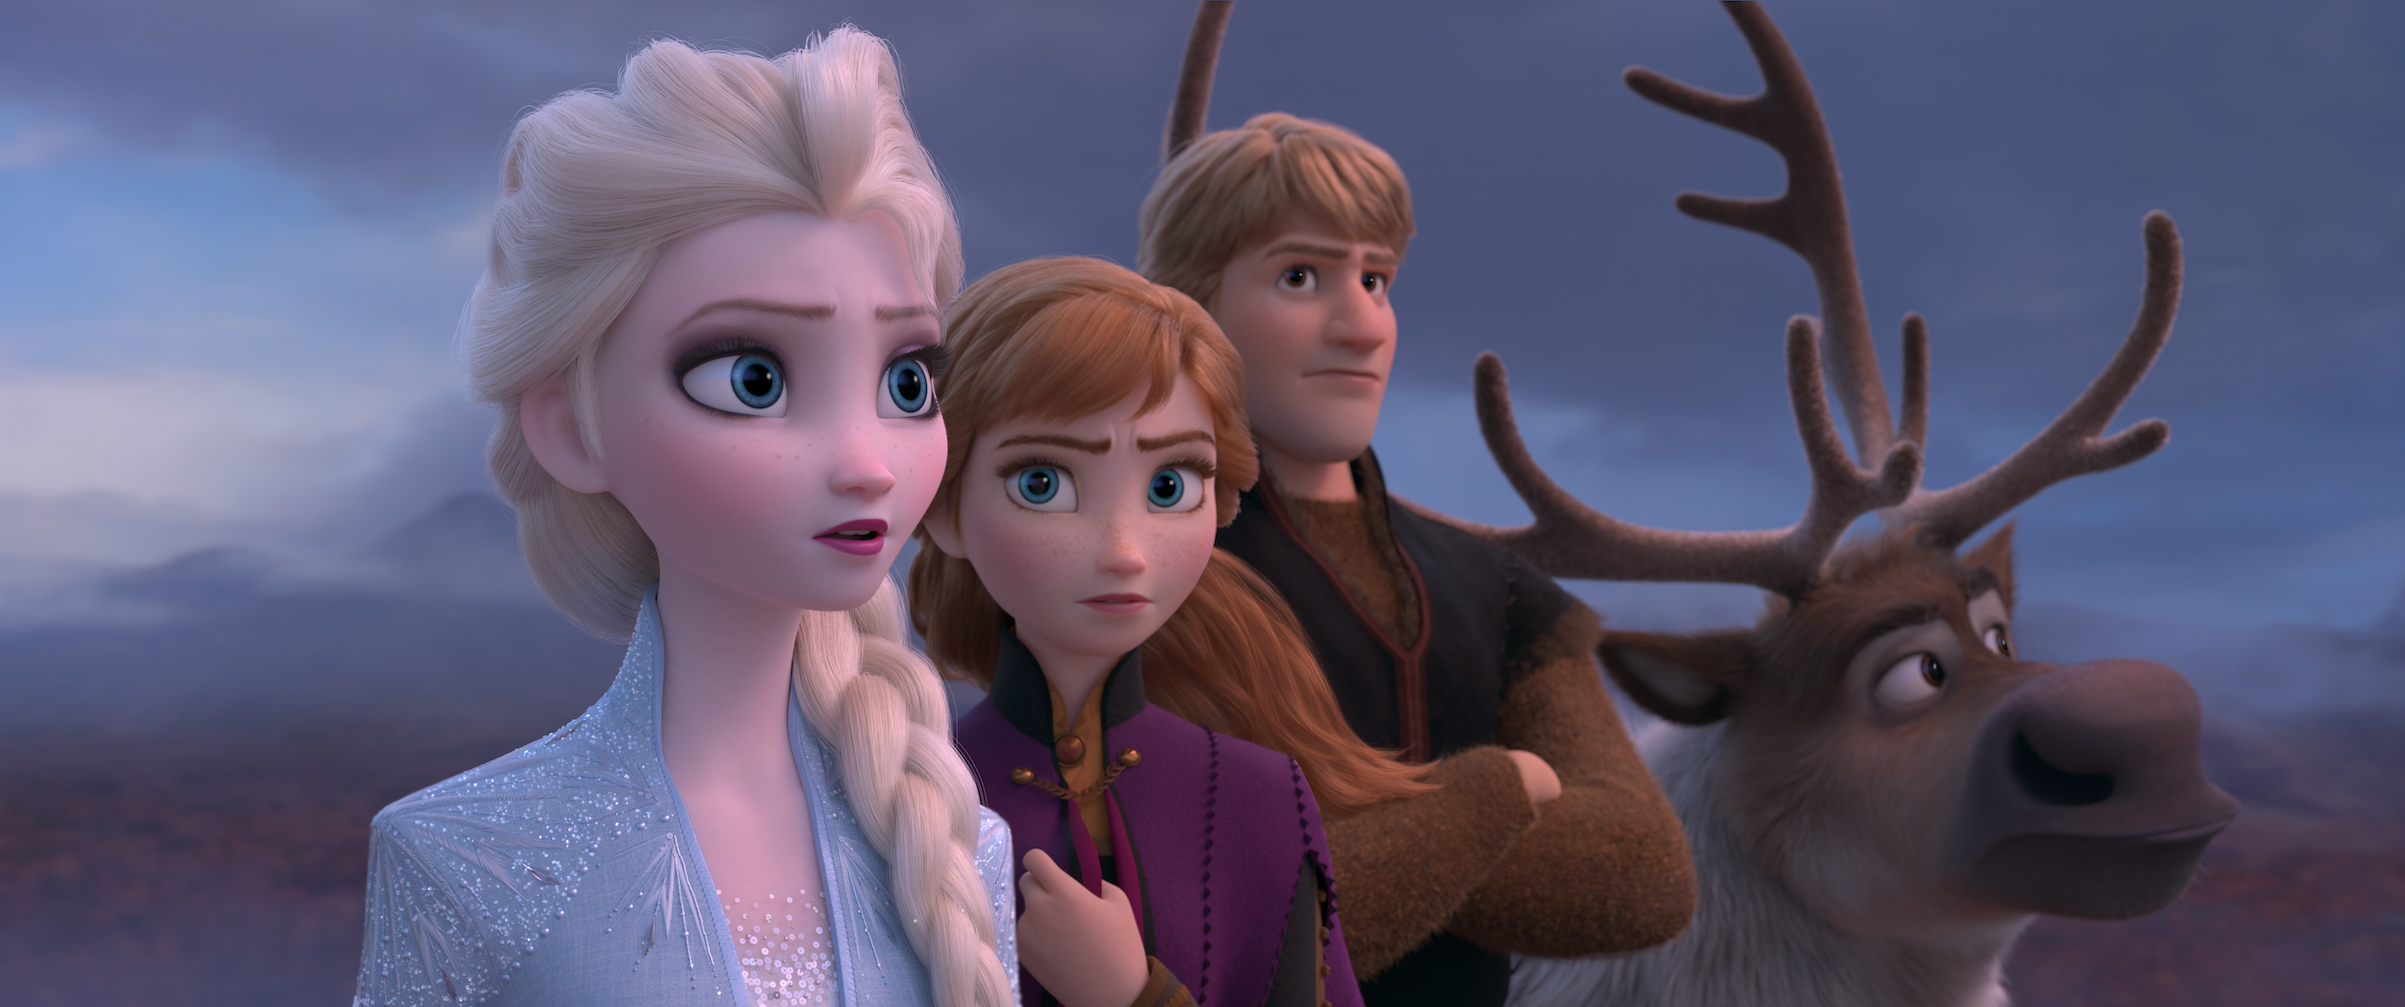 A scene from Walt Disney Animation Studios’ “Frozen 2,” opening in U.S. theaters on Nov. 22, 2019. (Walt Disney Animation Studios)